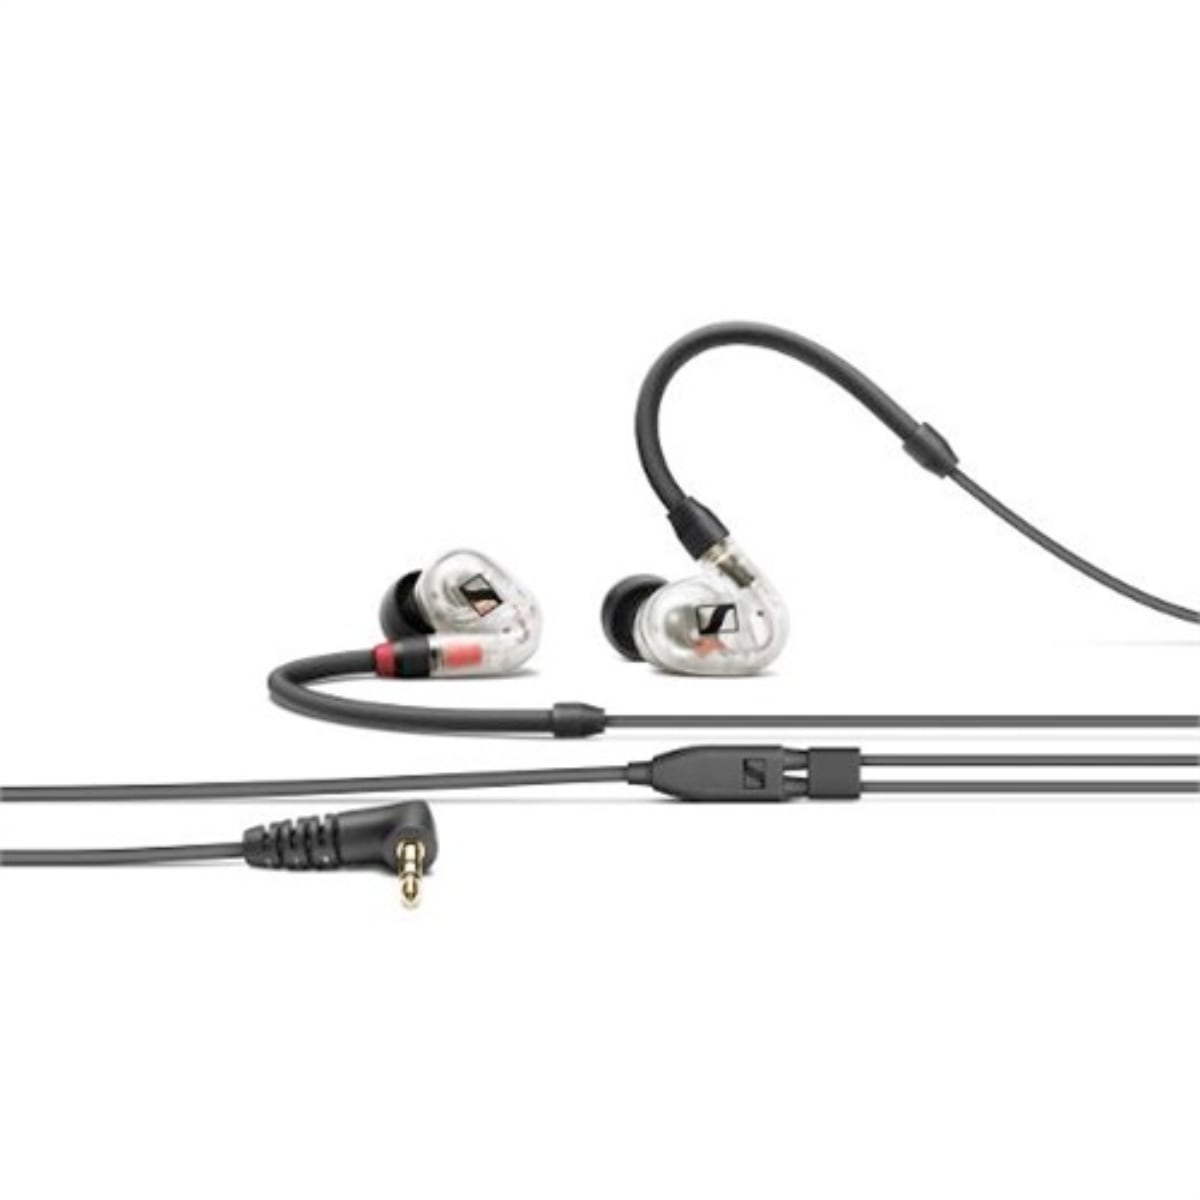 Sennheiser IE 100 Pro dynamic in-ear monitors